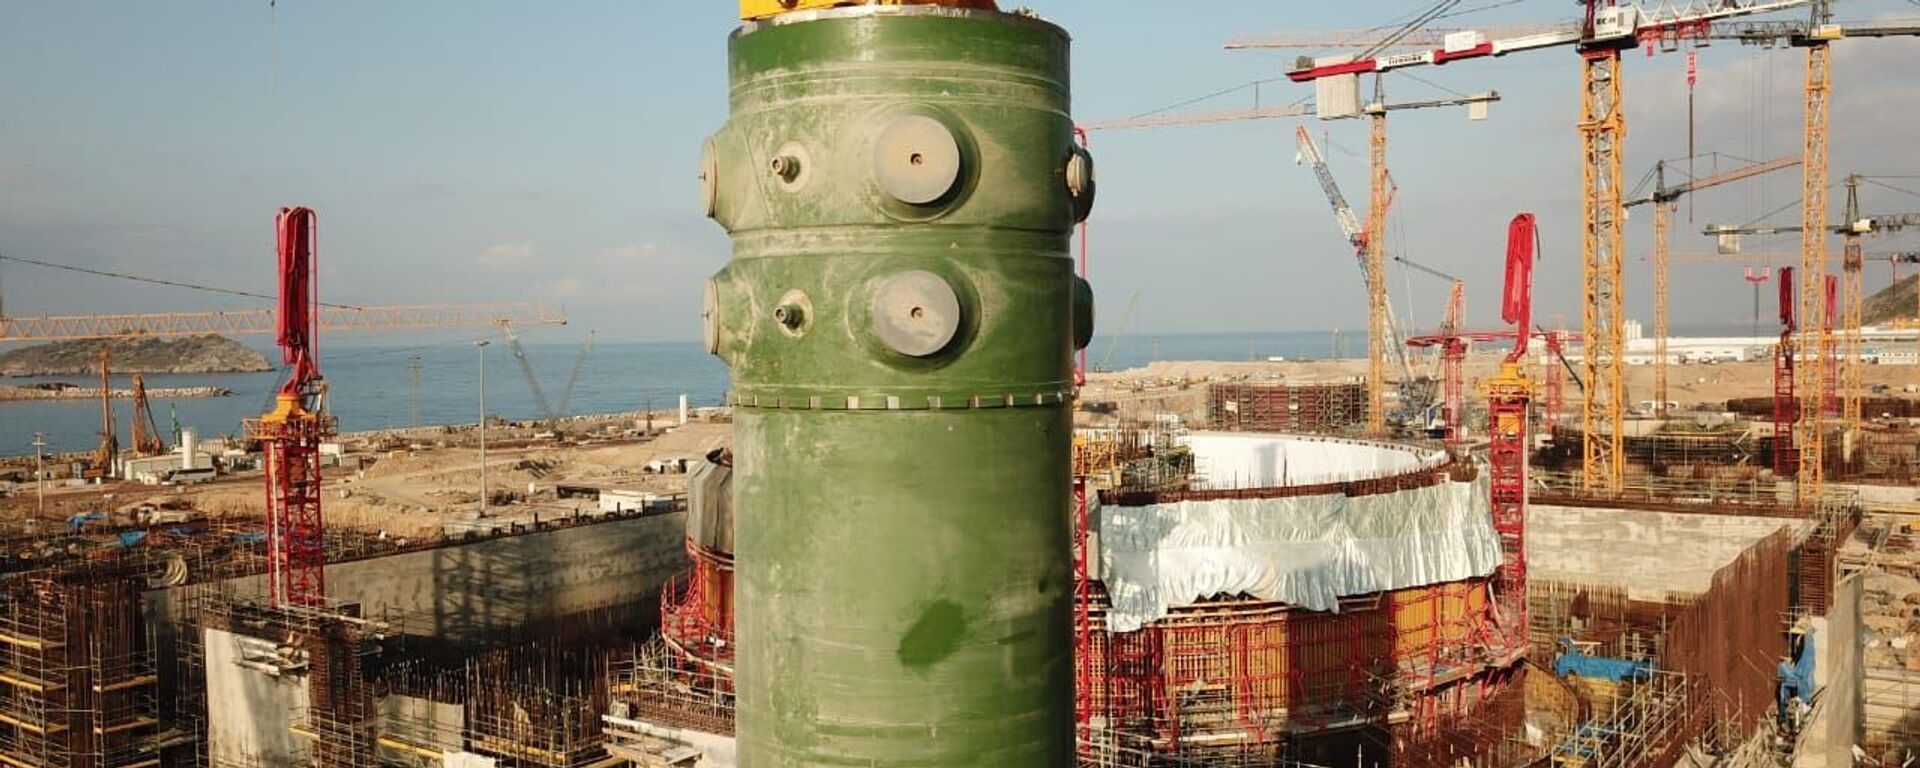 Akkuyu Nükleer Güç Santrali’nde birinci ünitenin reaktör kabı - Sputnik Türkiye, 1920, 19.01.2022